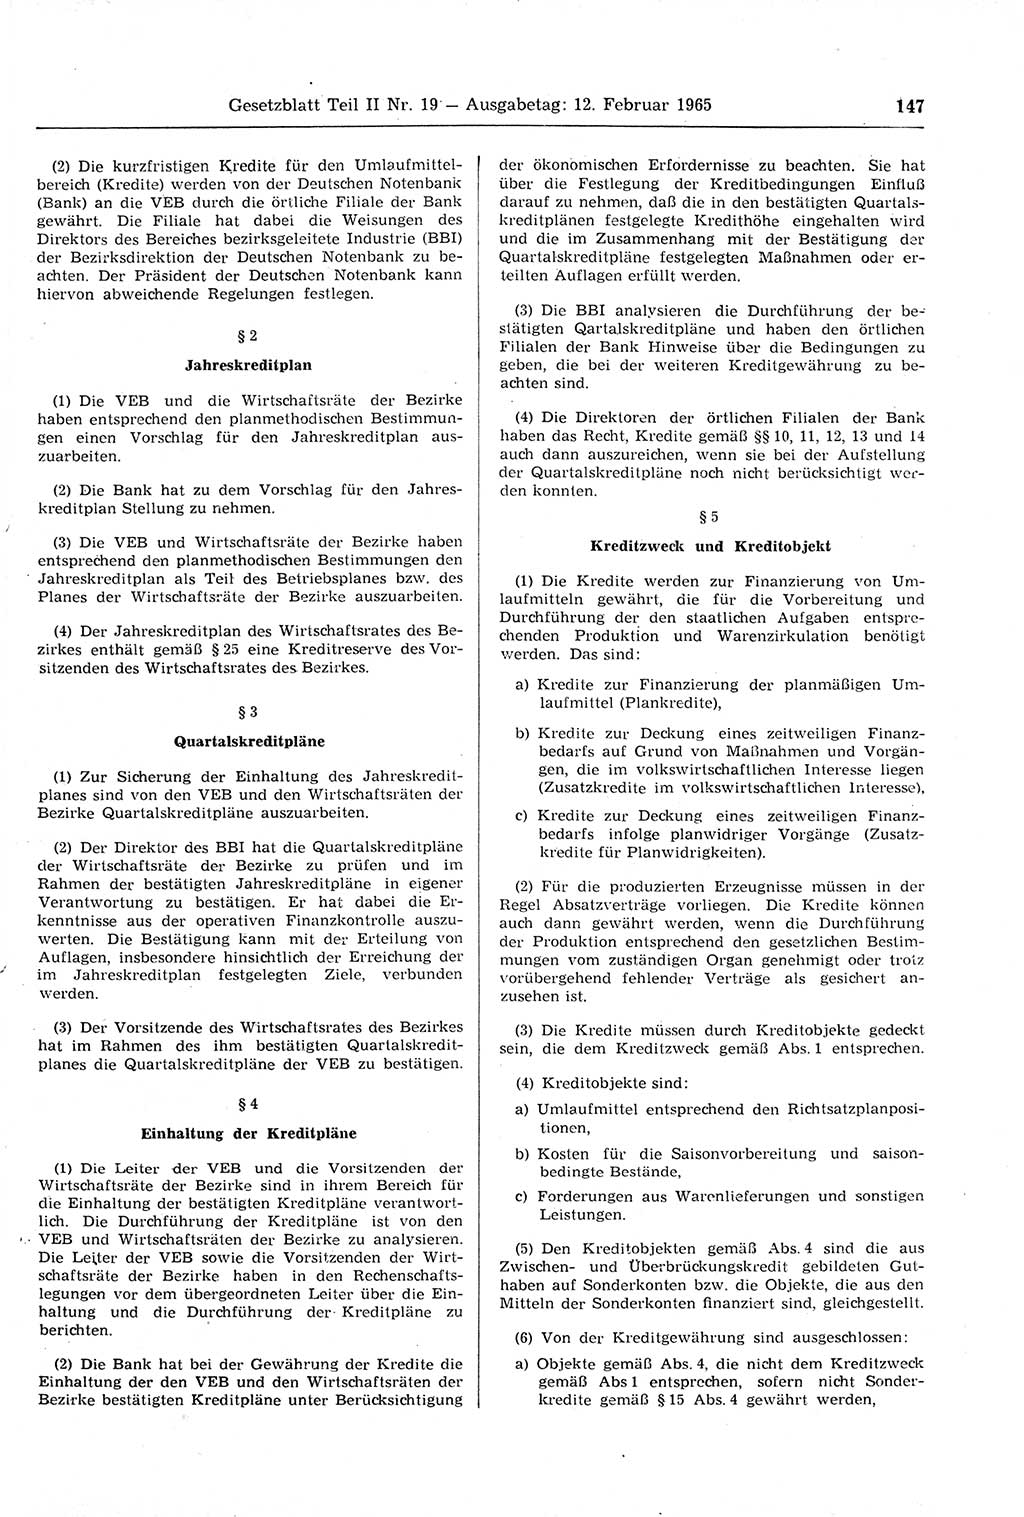 Gesetzblatt (GBl.) der Deutschen Demokratischen Republik (DDR) Teil ⅠⅠ 1965, Seite 147 (GBl. DDR ⅠⅠ 1965, S. 147)